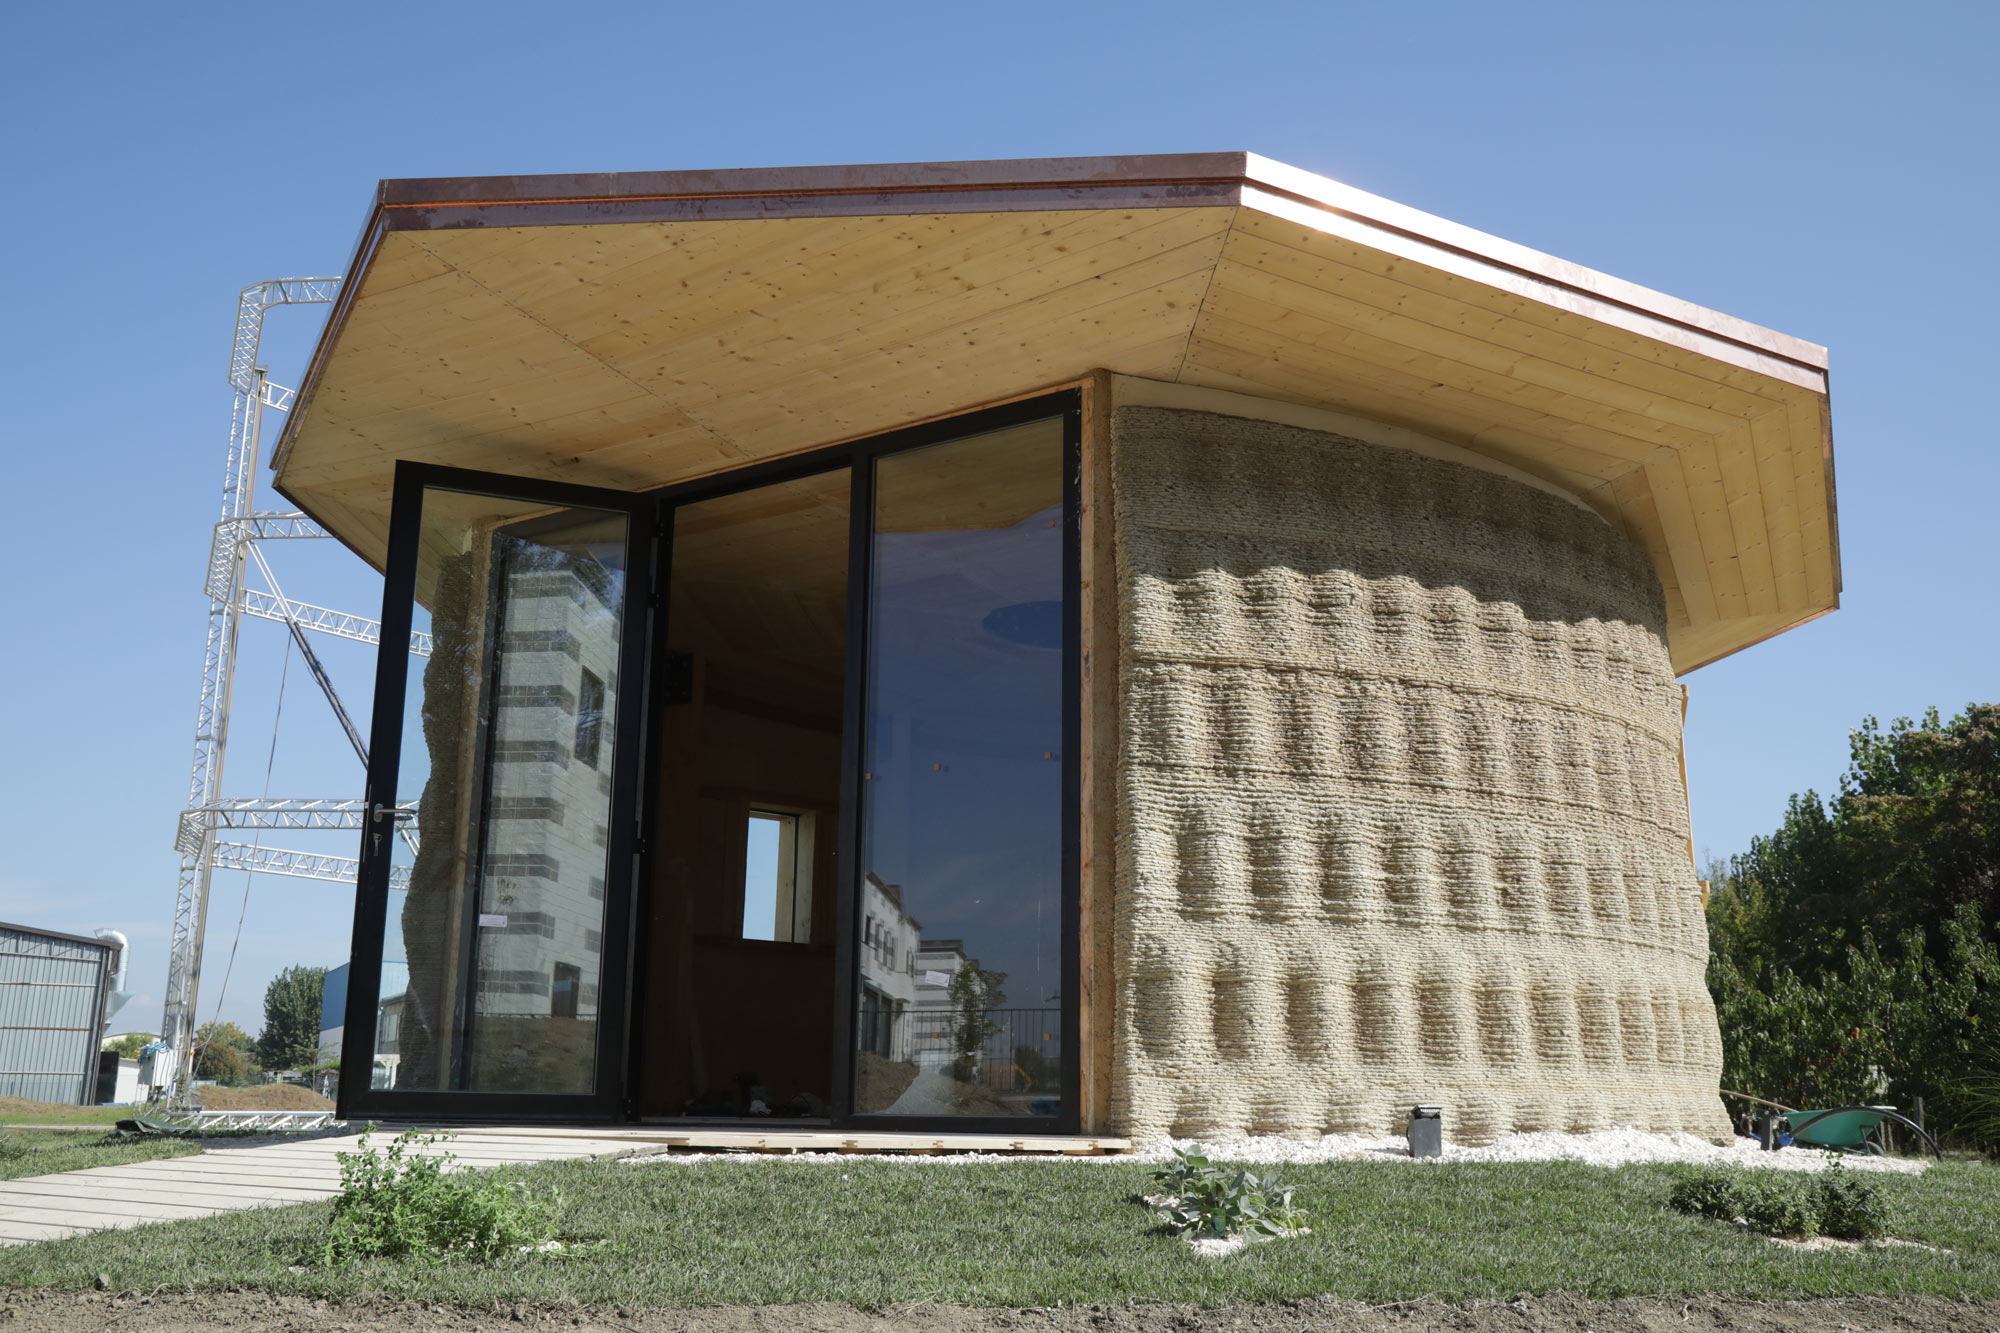 Projetos usam impressão 3D e Wikihouse para construir casas mais baratas -  08/03/2021 - UOL ECOA